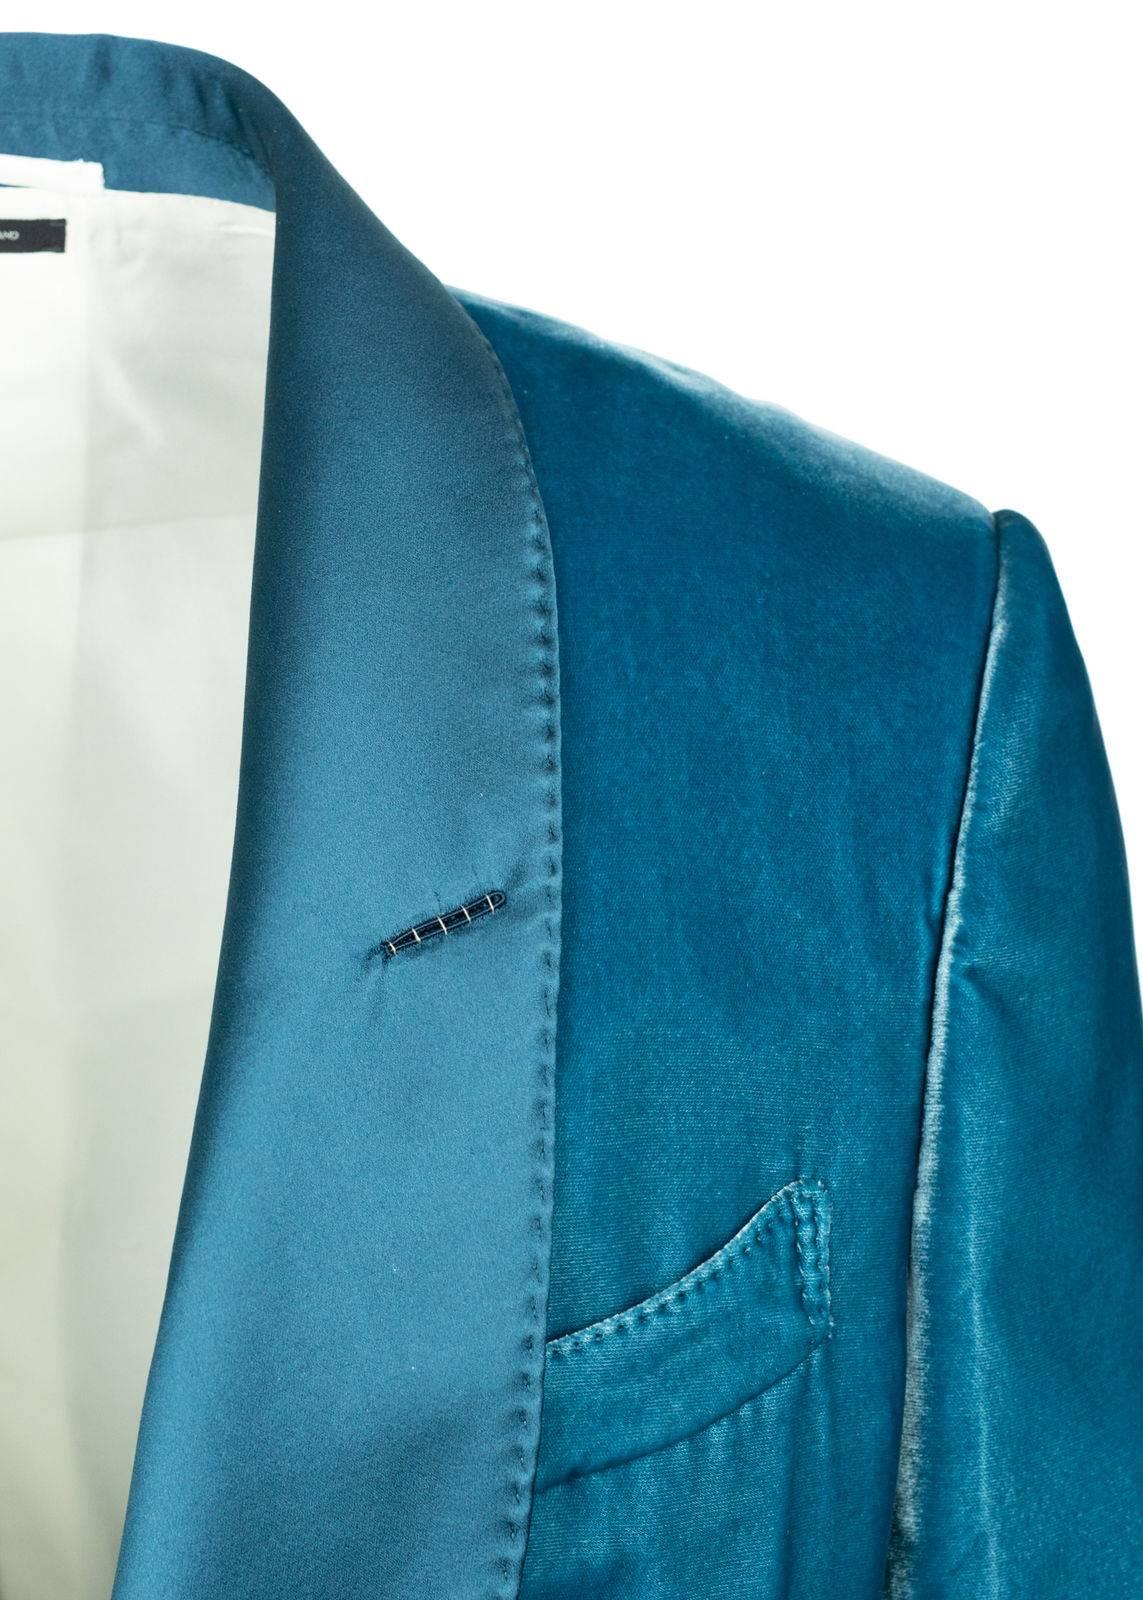 tom ford blue velvet jacket